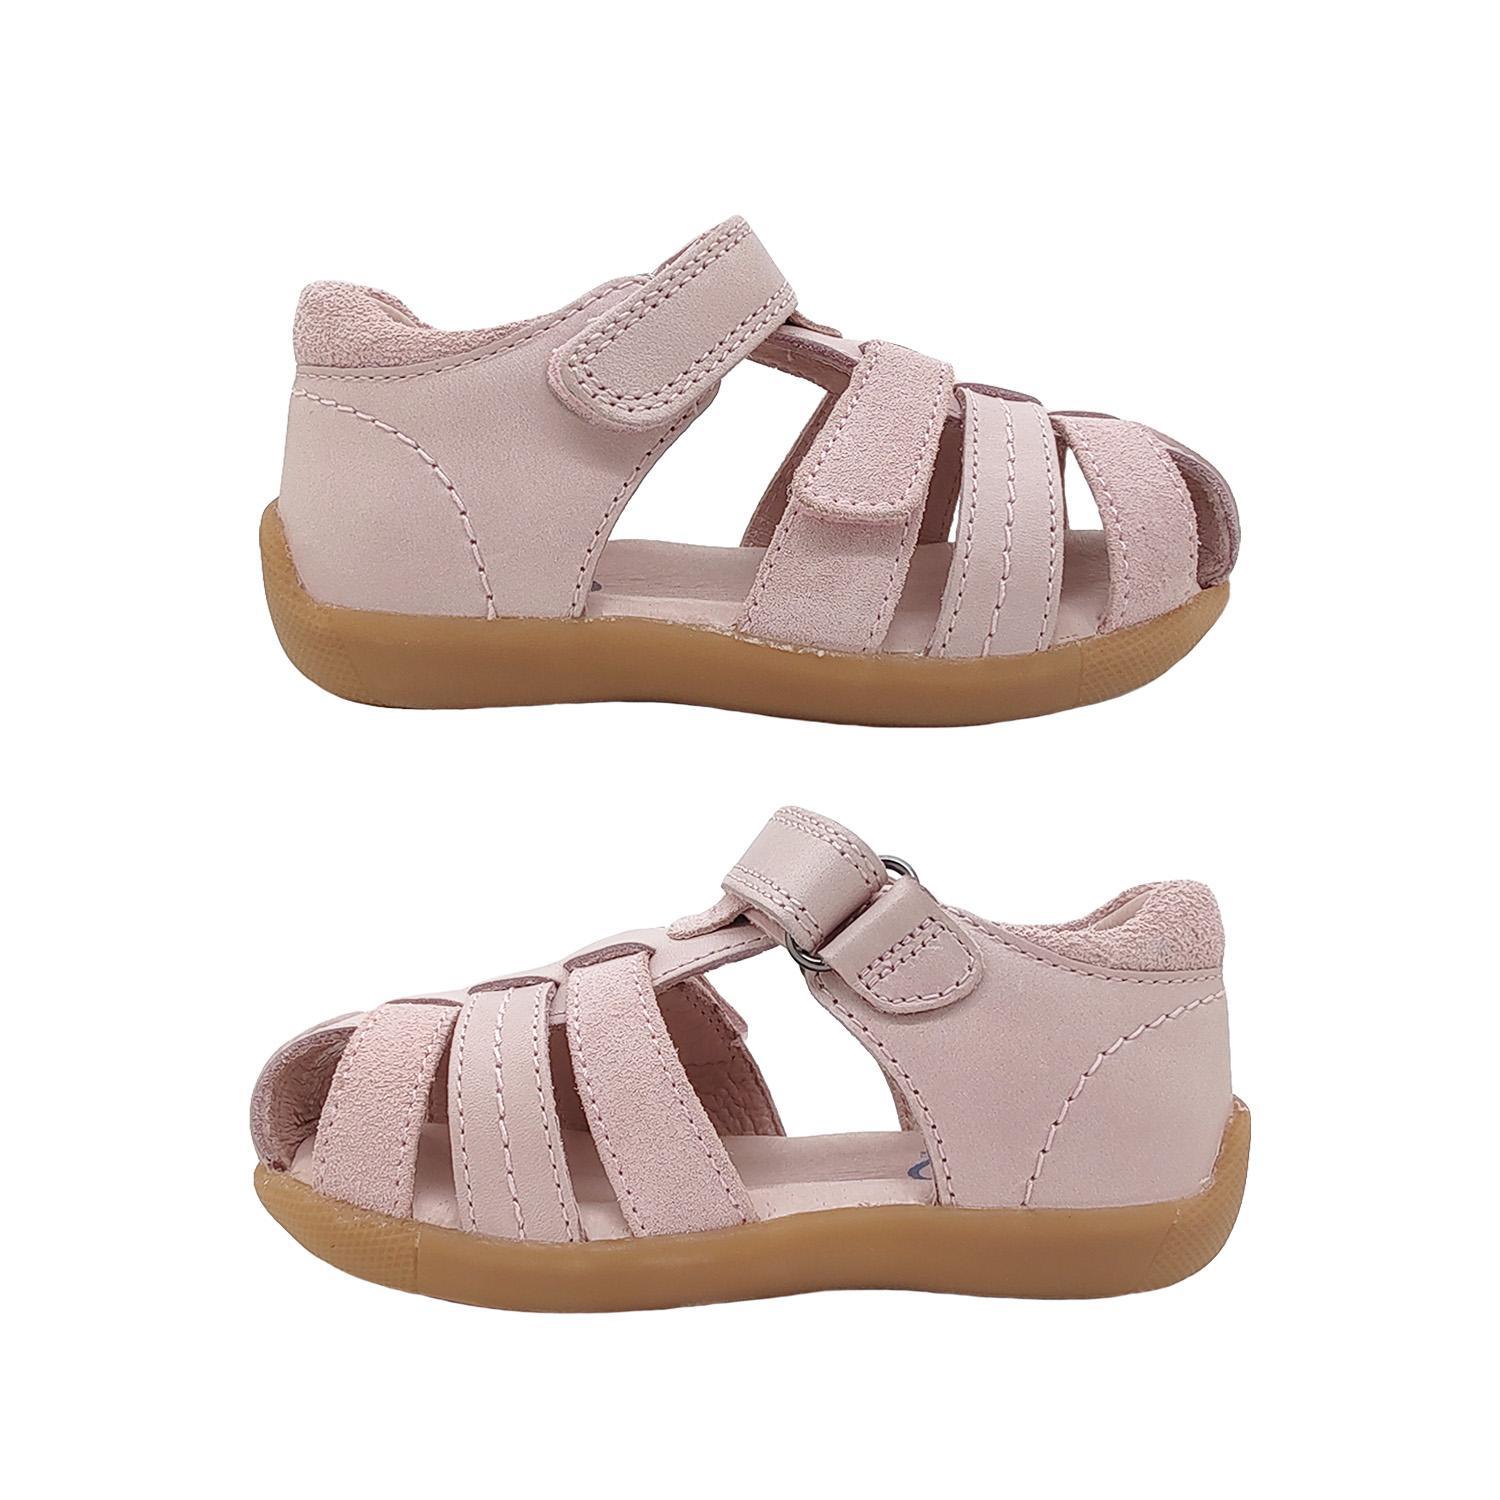 Surefit Alex Little Girls Sandals Leather Upper Toddler Back in Toe Cover Adjust-Pink-23